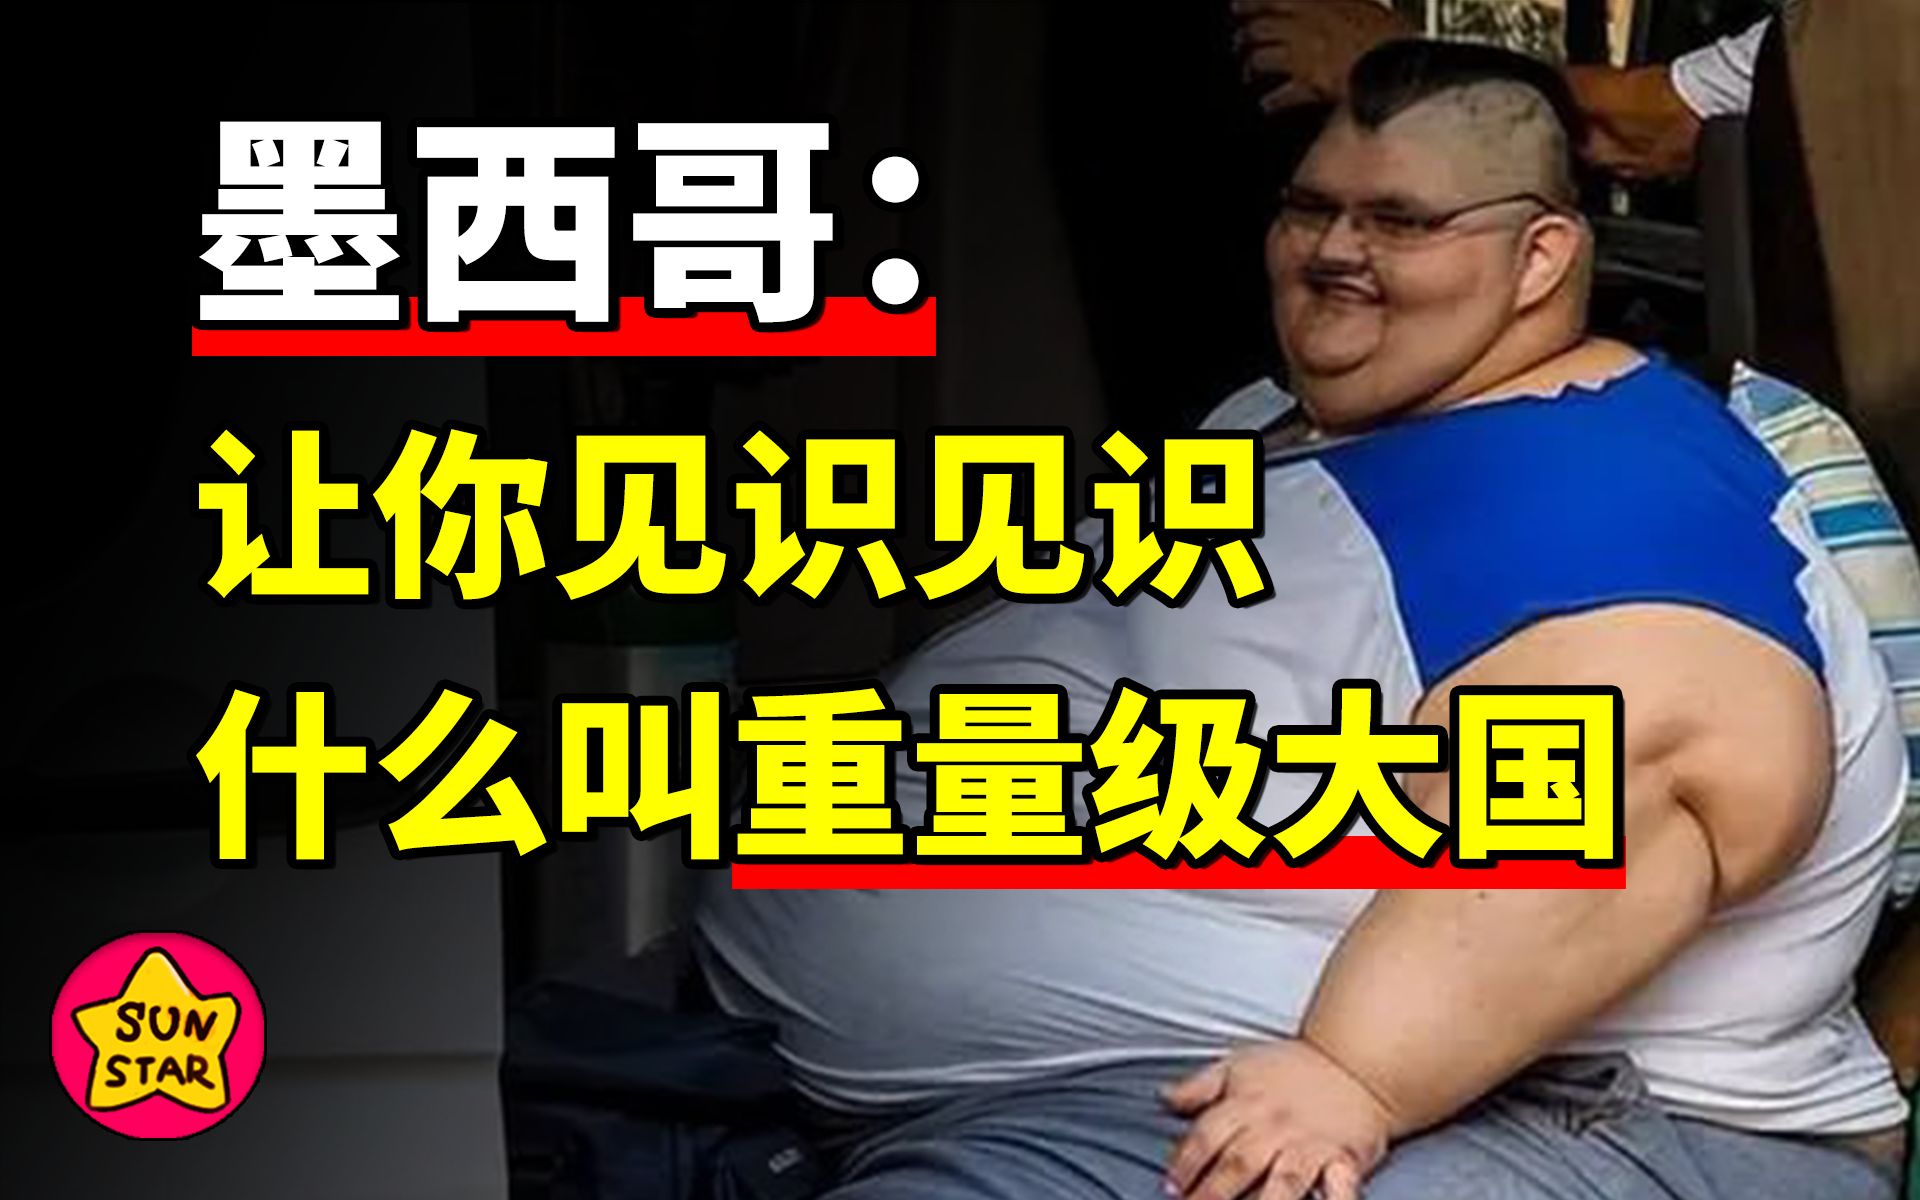 世界上最胖的人减重660斤后体重520斤：能抬起胳膊的感觉真好_社会_中国小康网